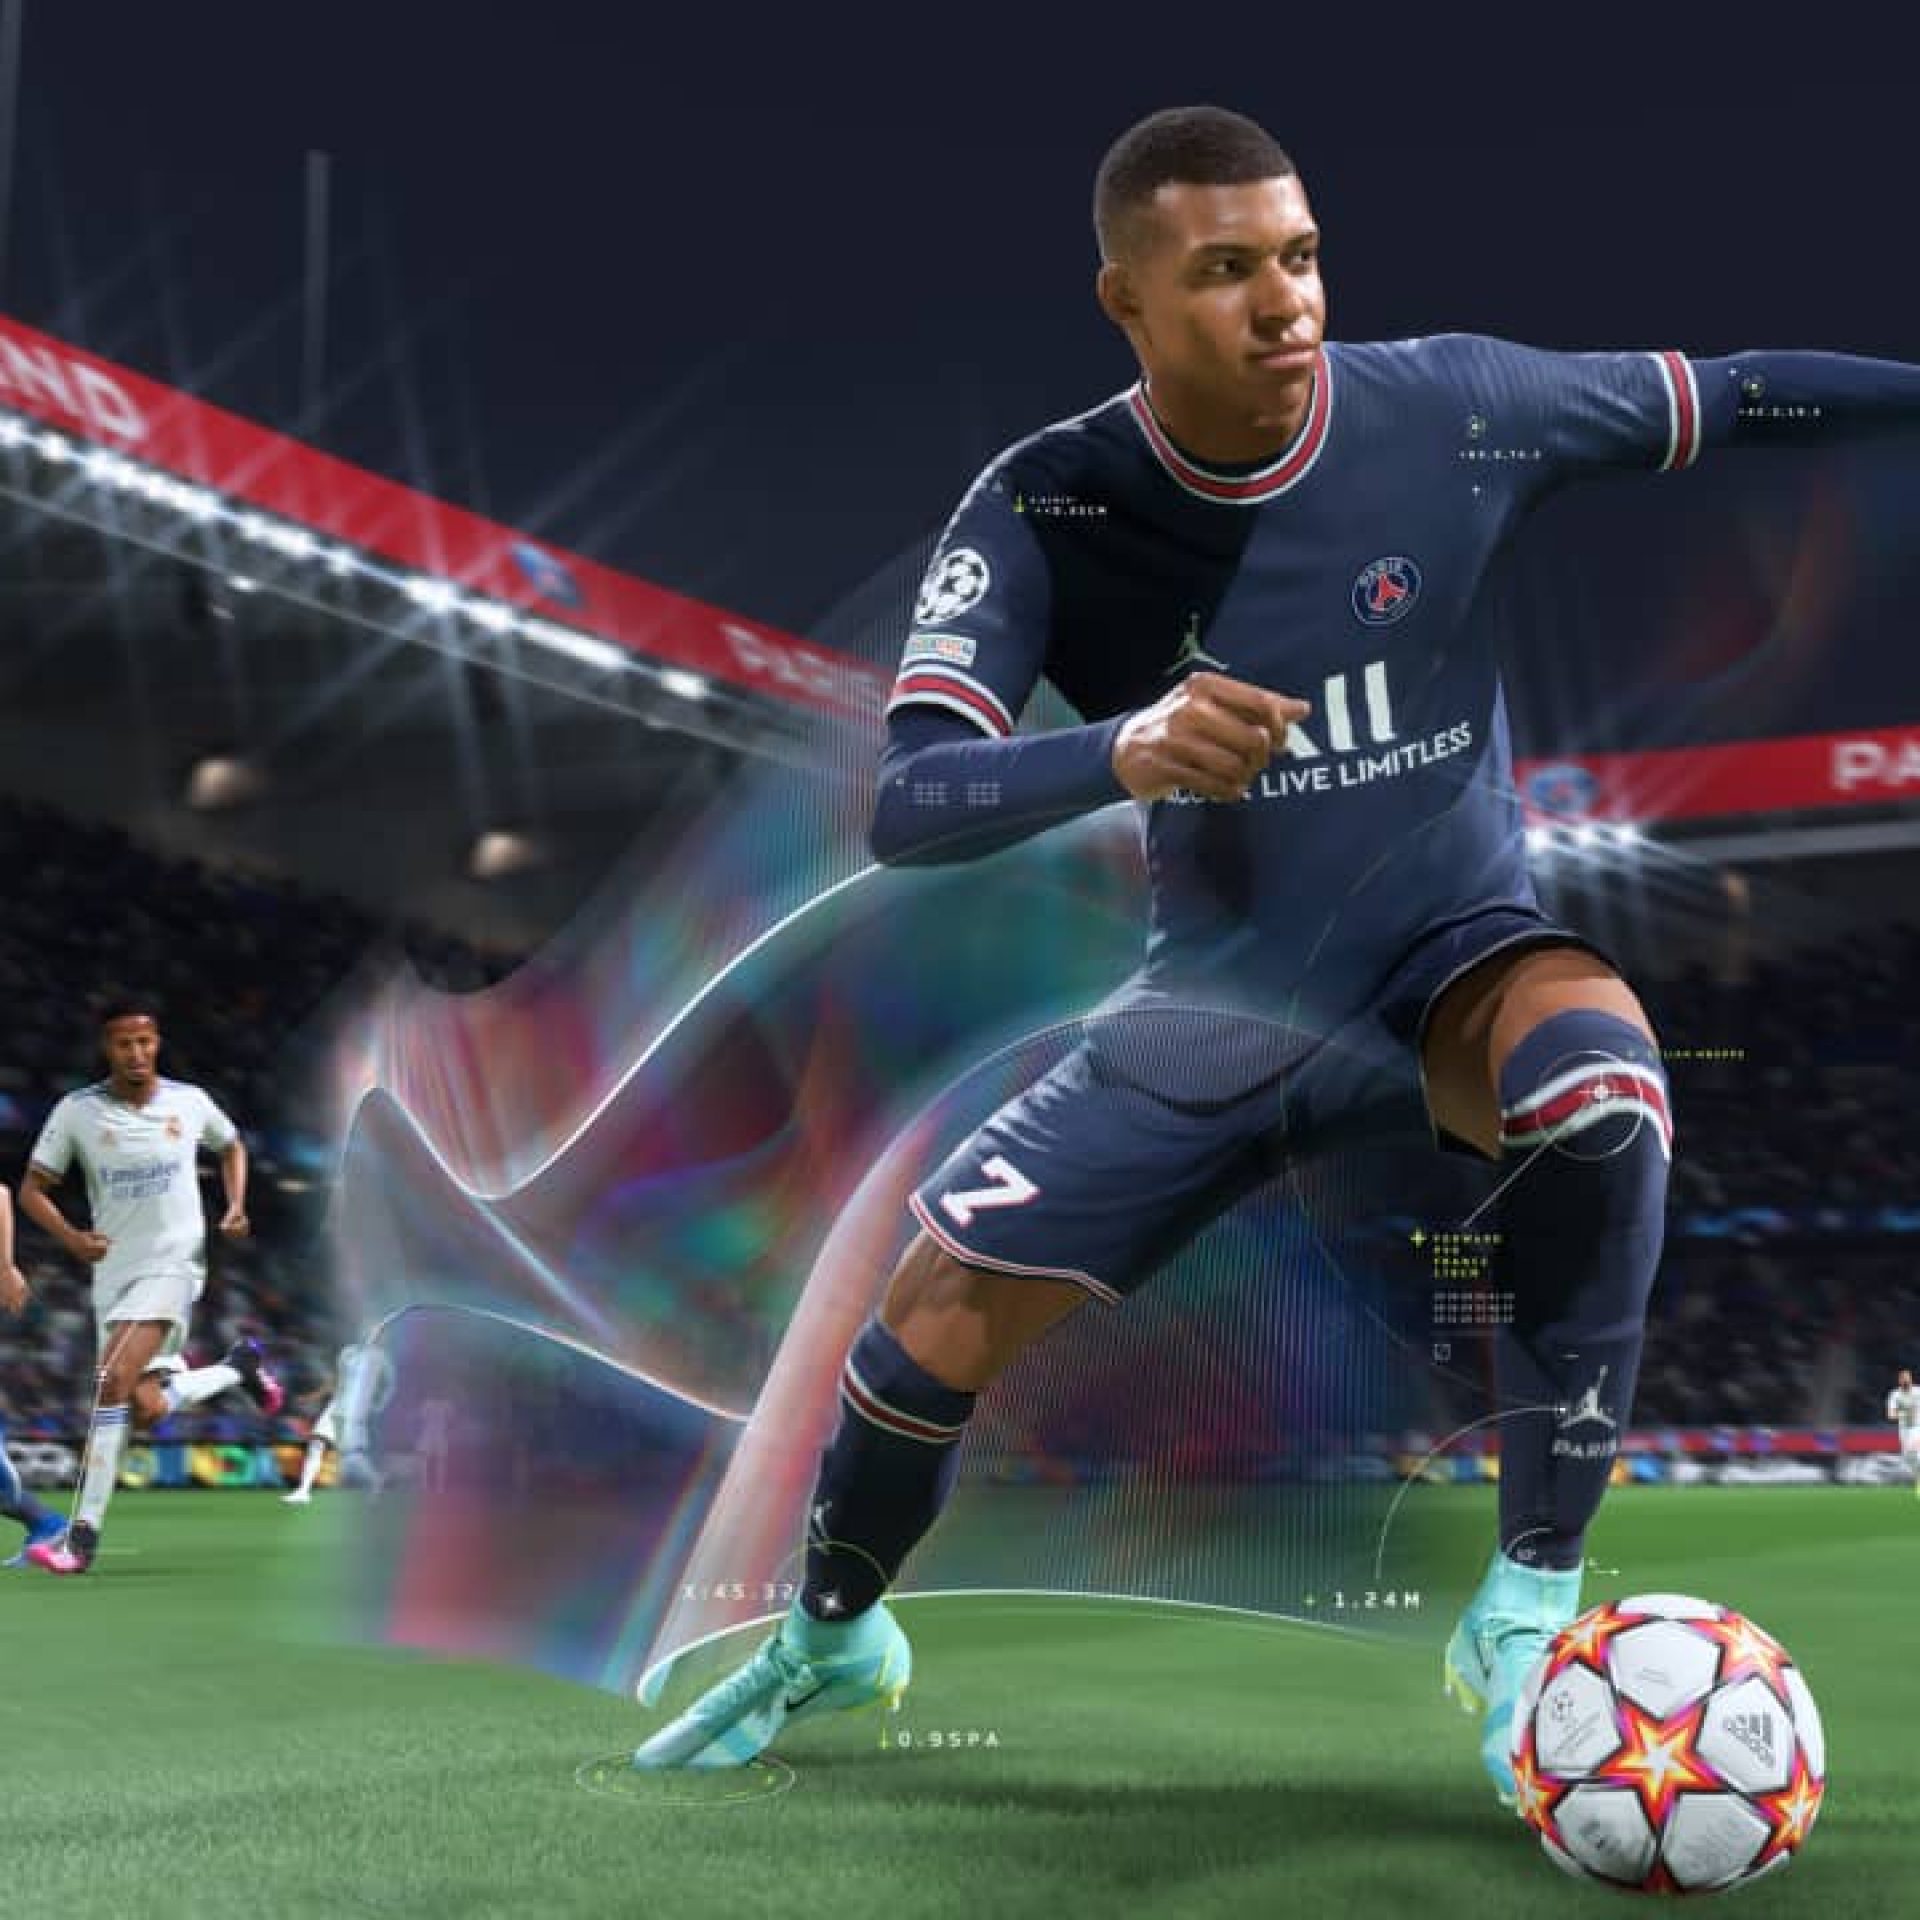 Халява: в FIFA 22 можно играть бесплатно в Steam на выходных